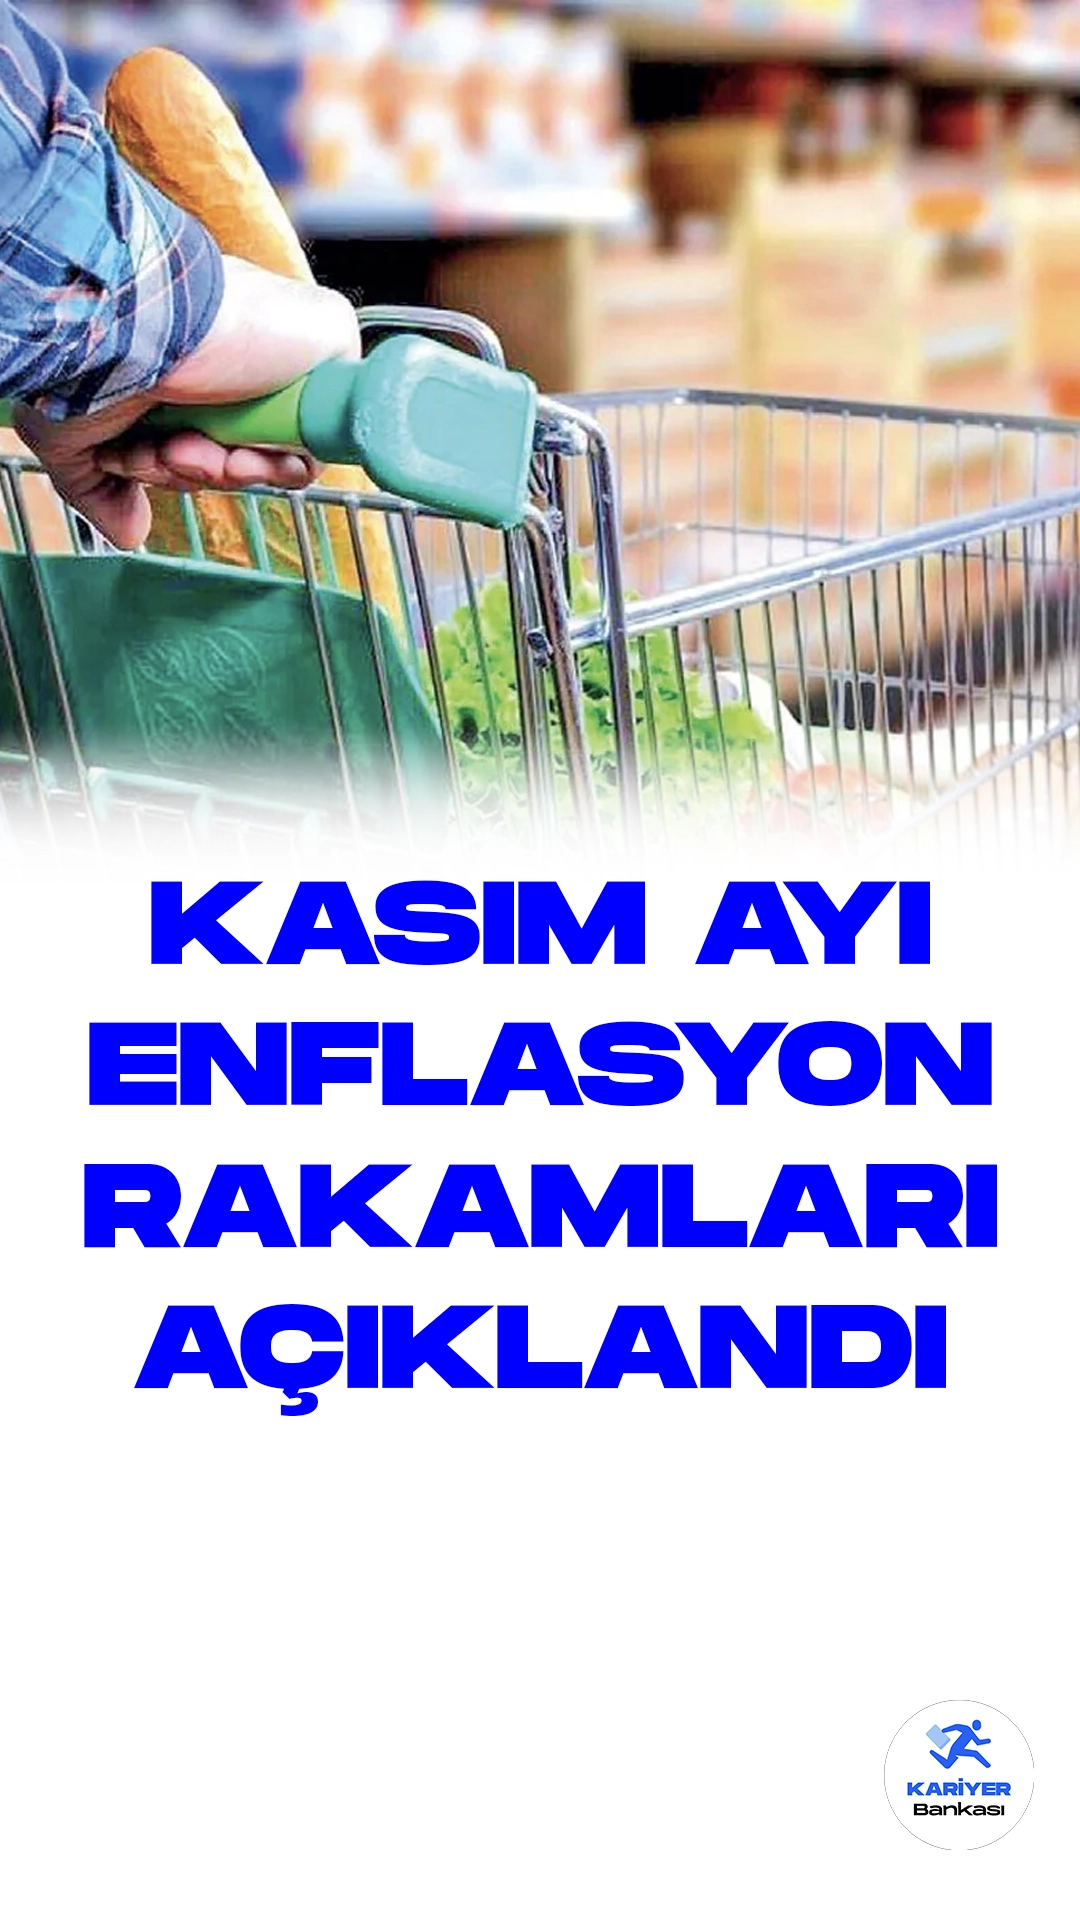 Kasım Ayı Enflasyon Rakamları Açıklandı.Türkiye İstatistik Kurumu (TÜİK), kasım ayı enflasyon rakamlarını kamuoyuyla paylaştı. Buna göre, Tüketici Fiyat Endeksi (TÜFE) kasım ayında yüzde 3,28 oranında artış gösterdi.